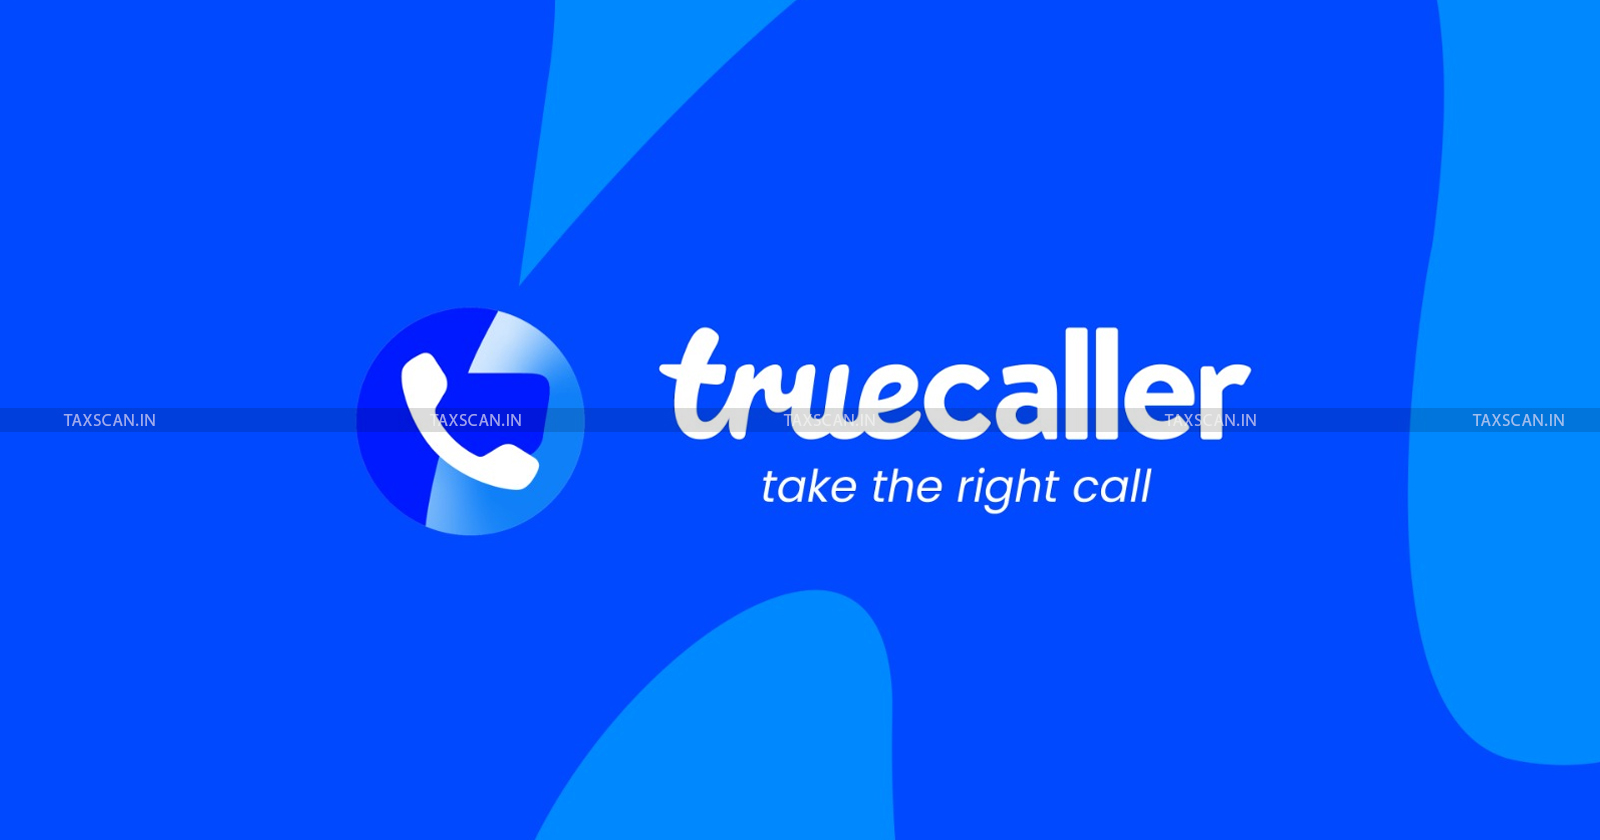 Truecaller - B.com vacancy - MBA vacancy - job scan - taxscan